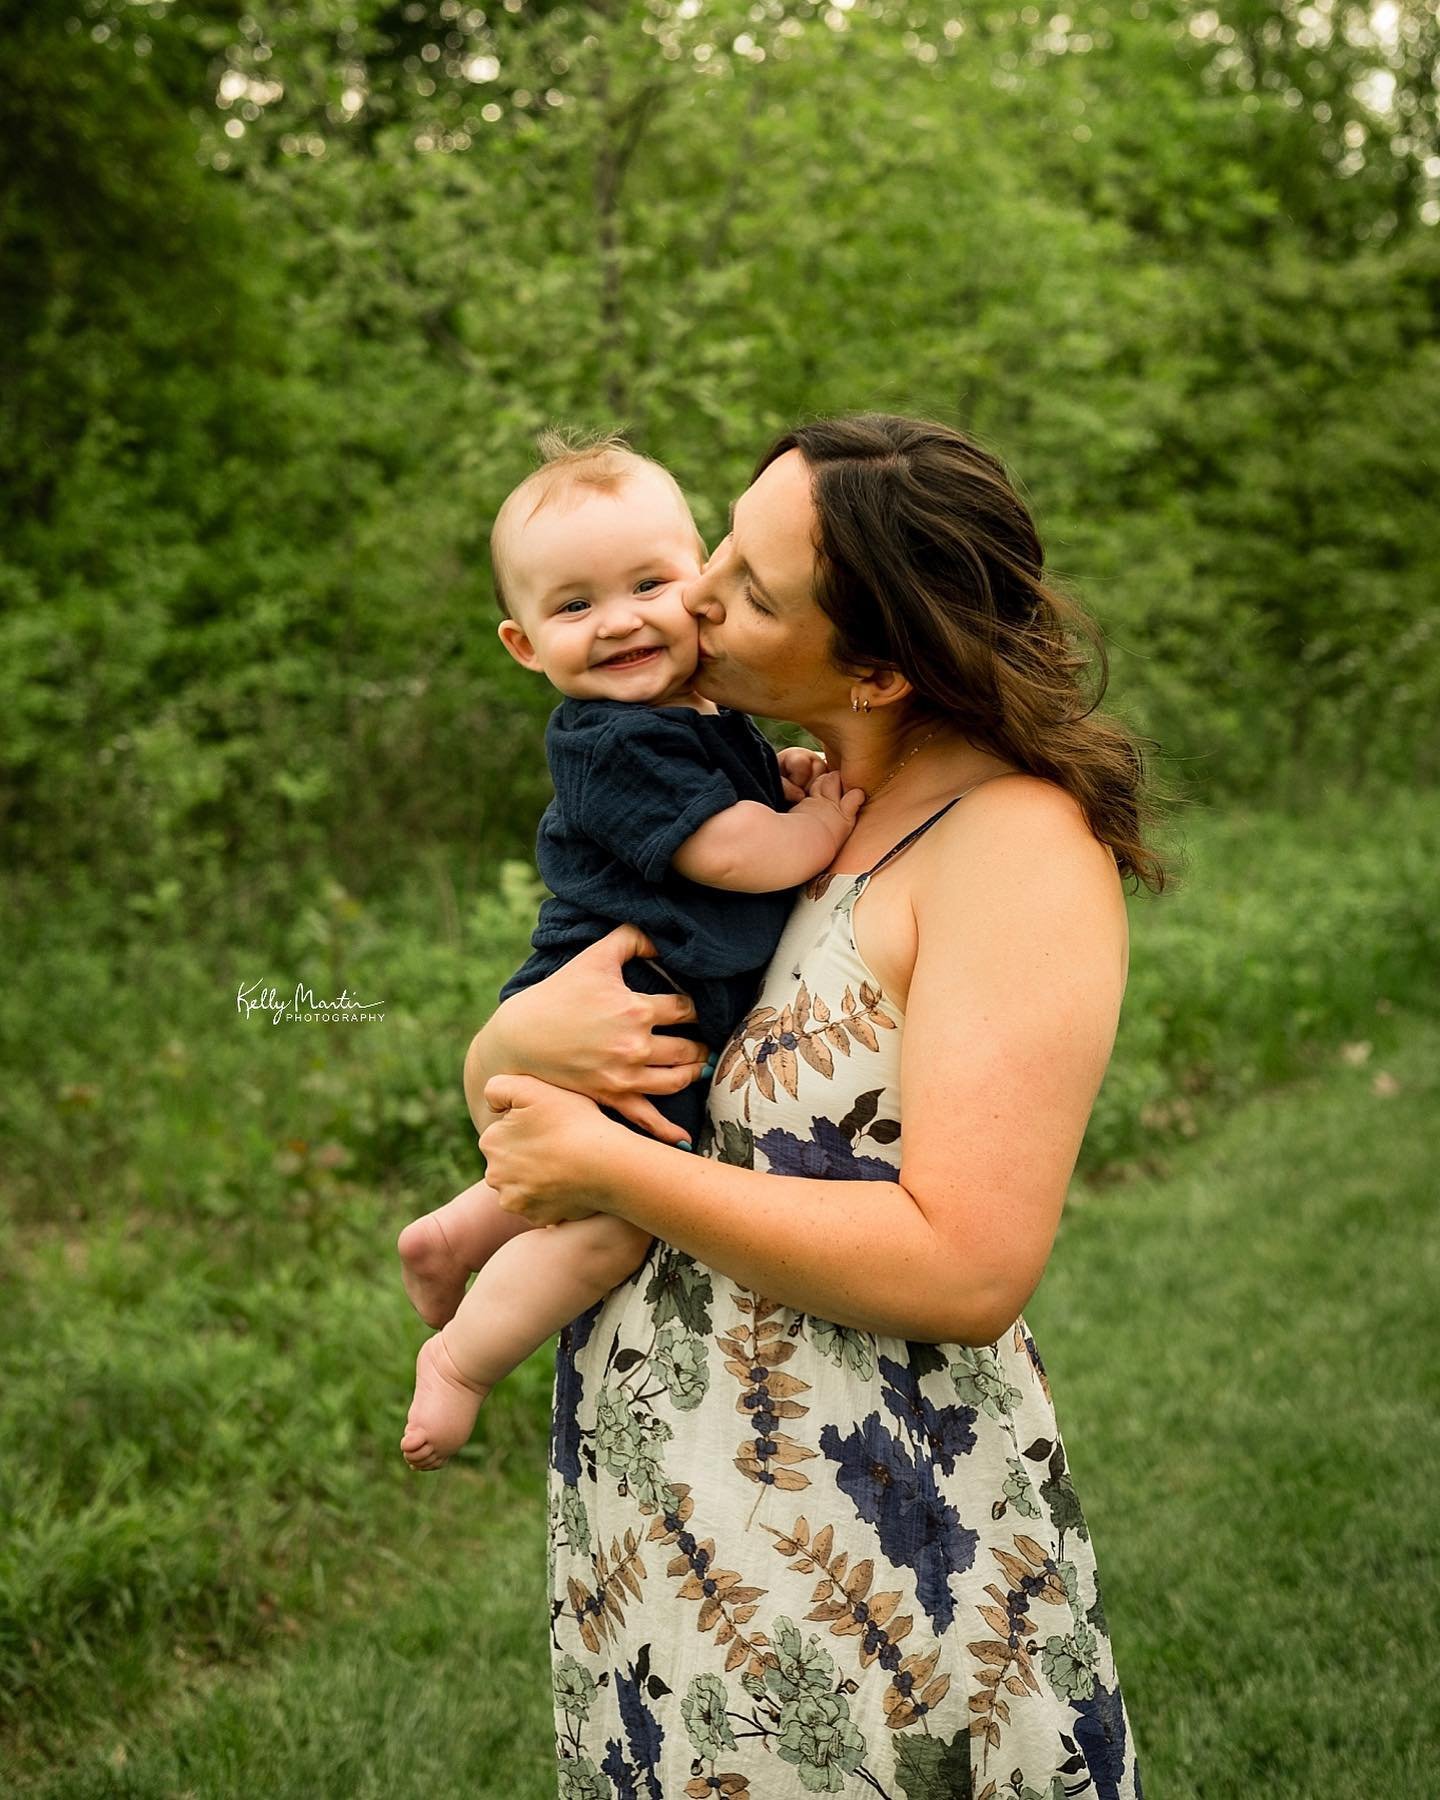 Little cheeser 😁 #kellymartinphotography #indianapolisfamilyphotographer #zionsvillefamilyphotographer